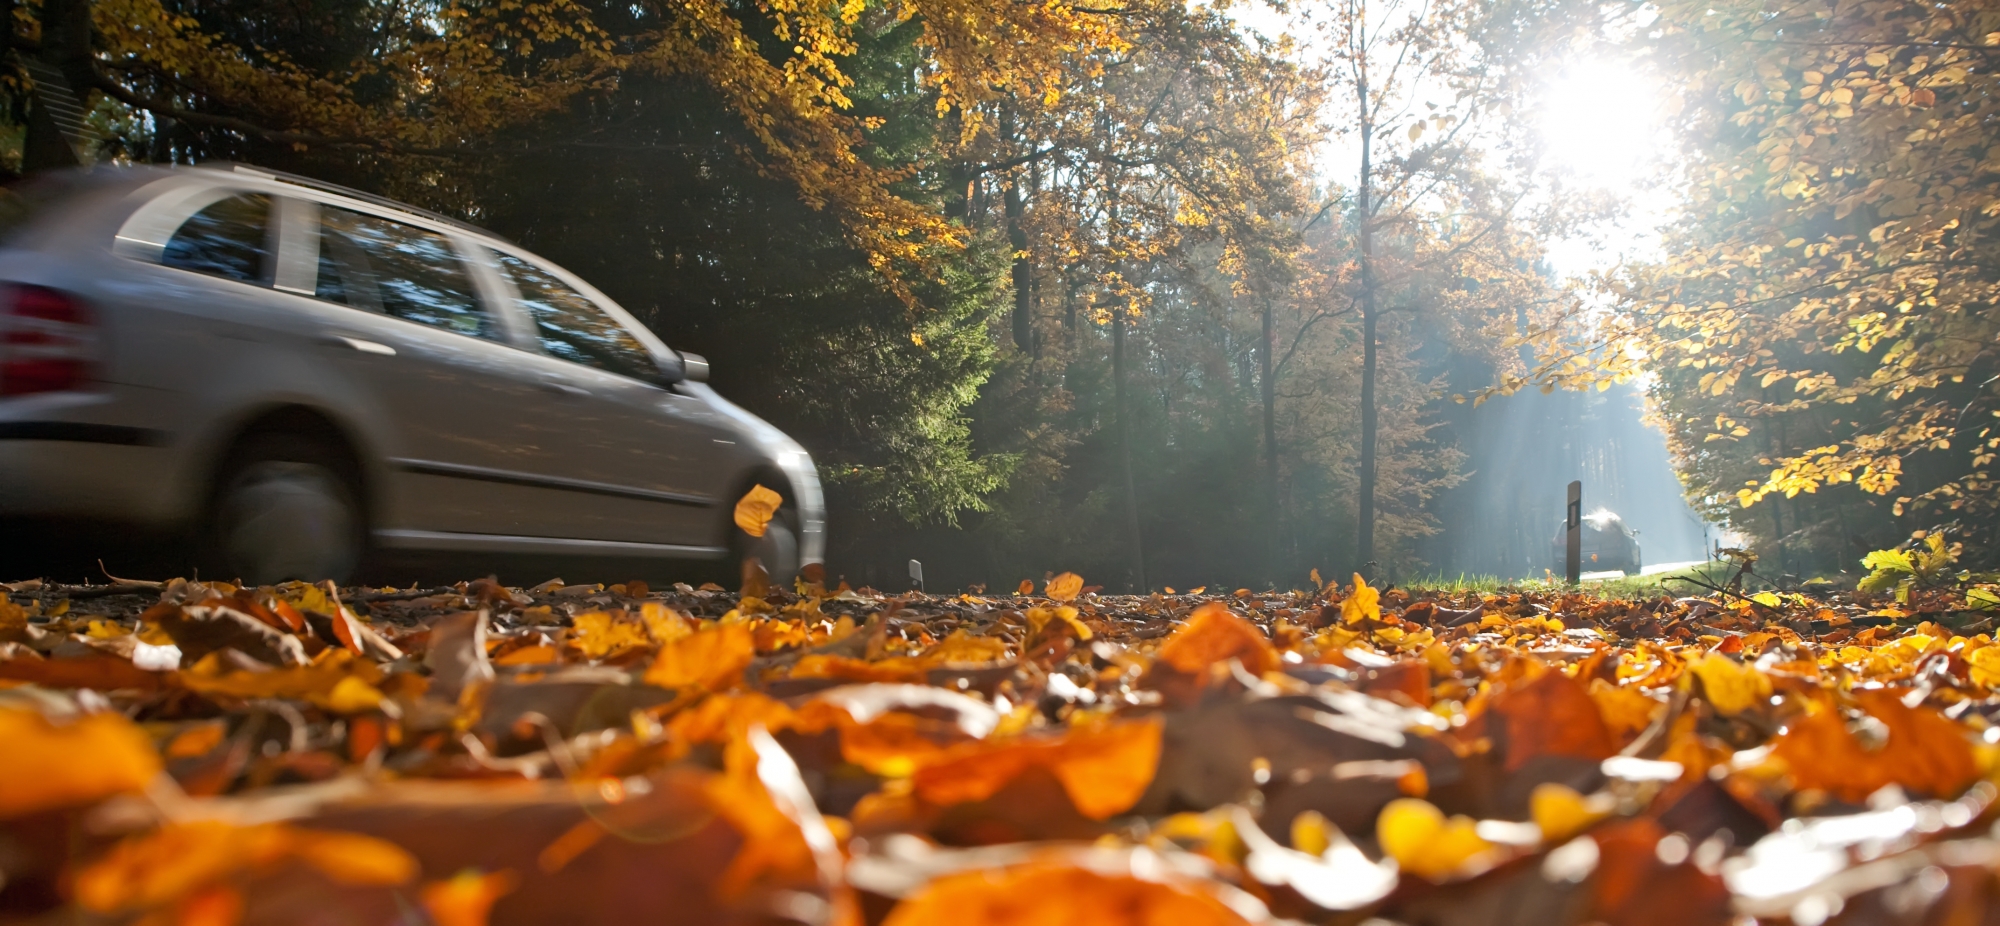 L'automne est une saison particulièrement risquée pour les automobilistes. (Illustration)